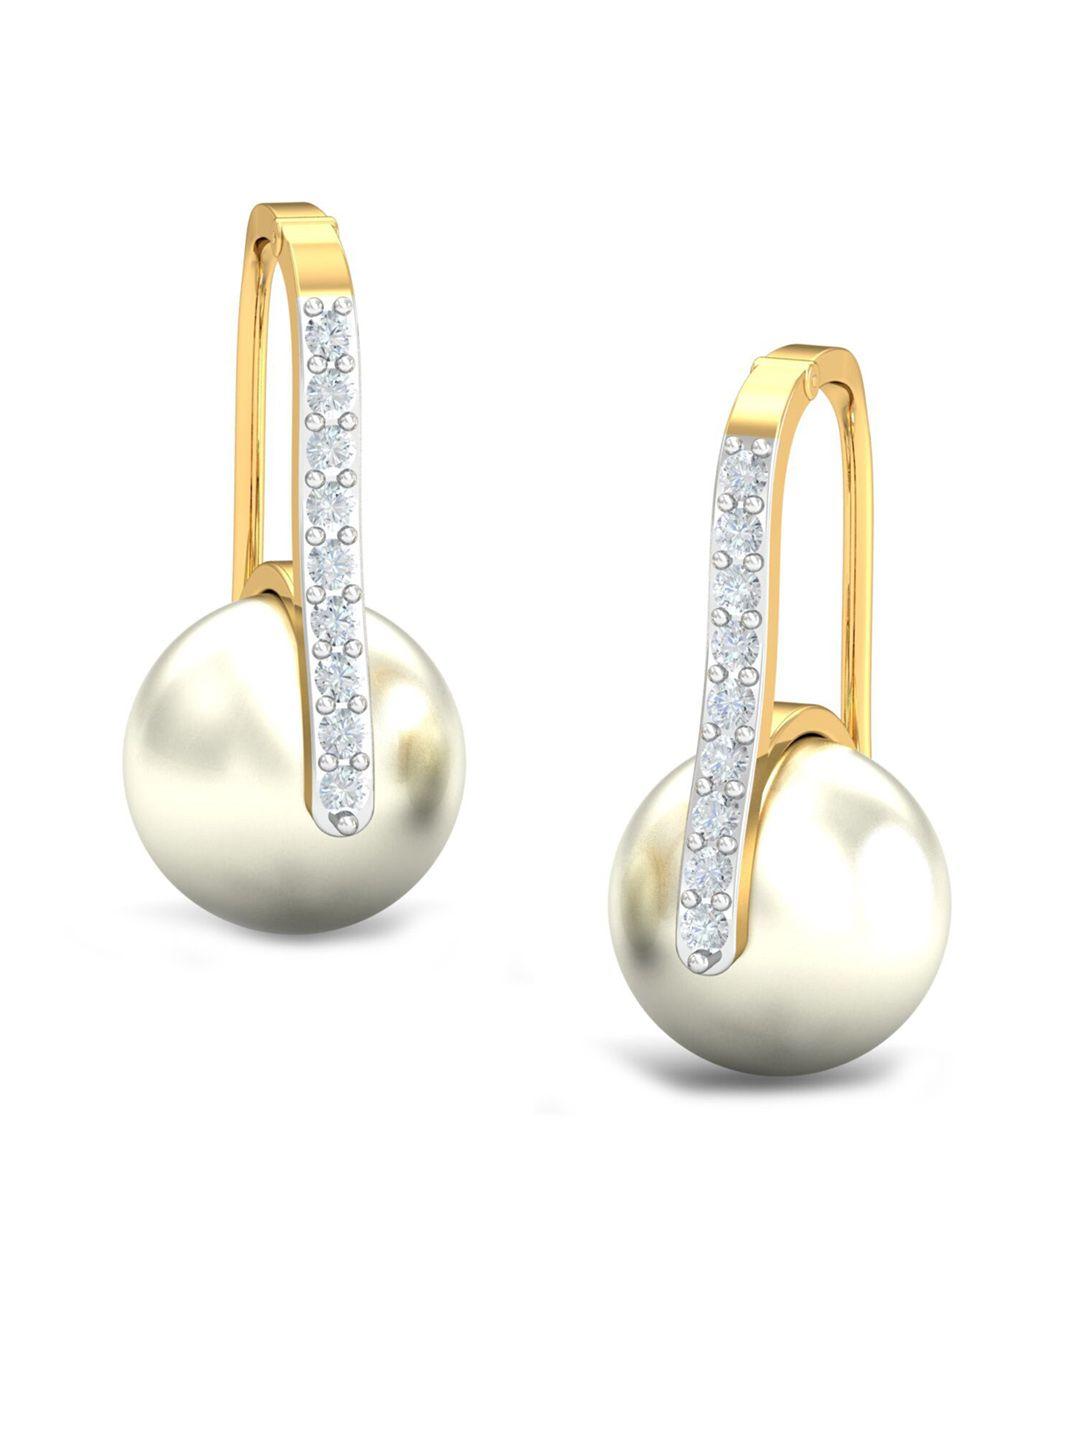 kuberbox 18kt gold diamond ekin hoops earrings- 1.64 gm